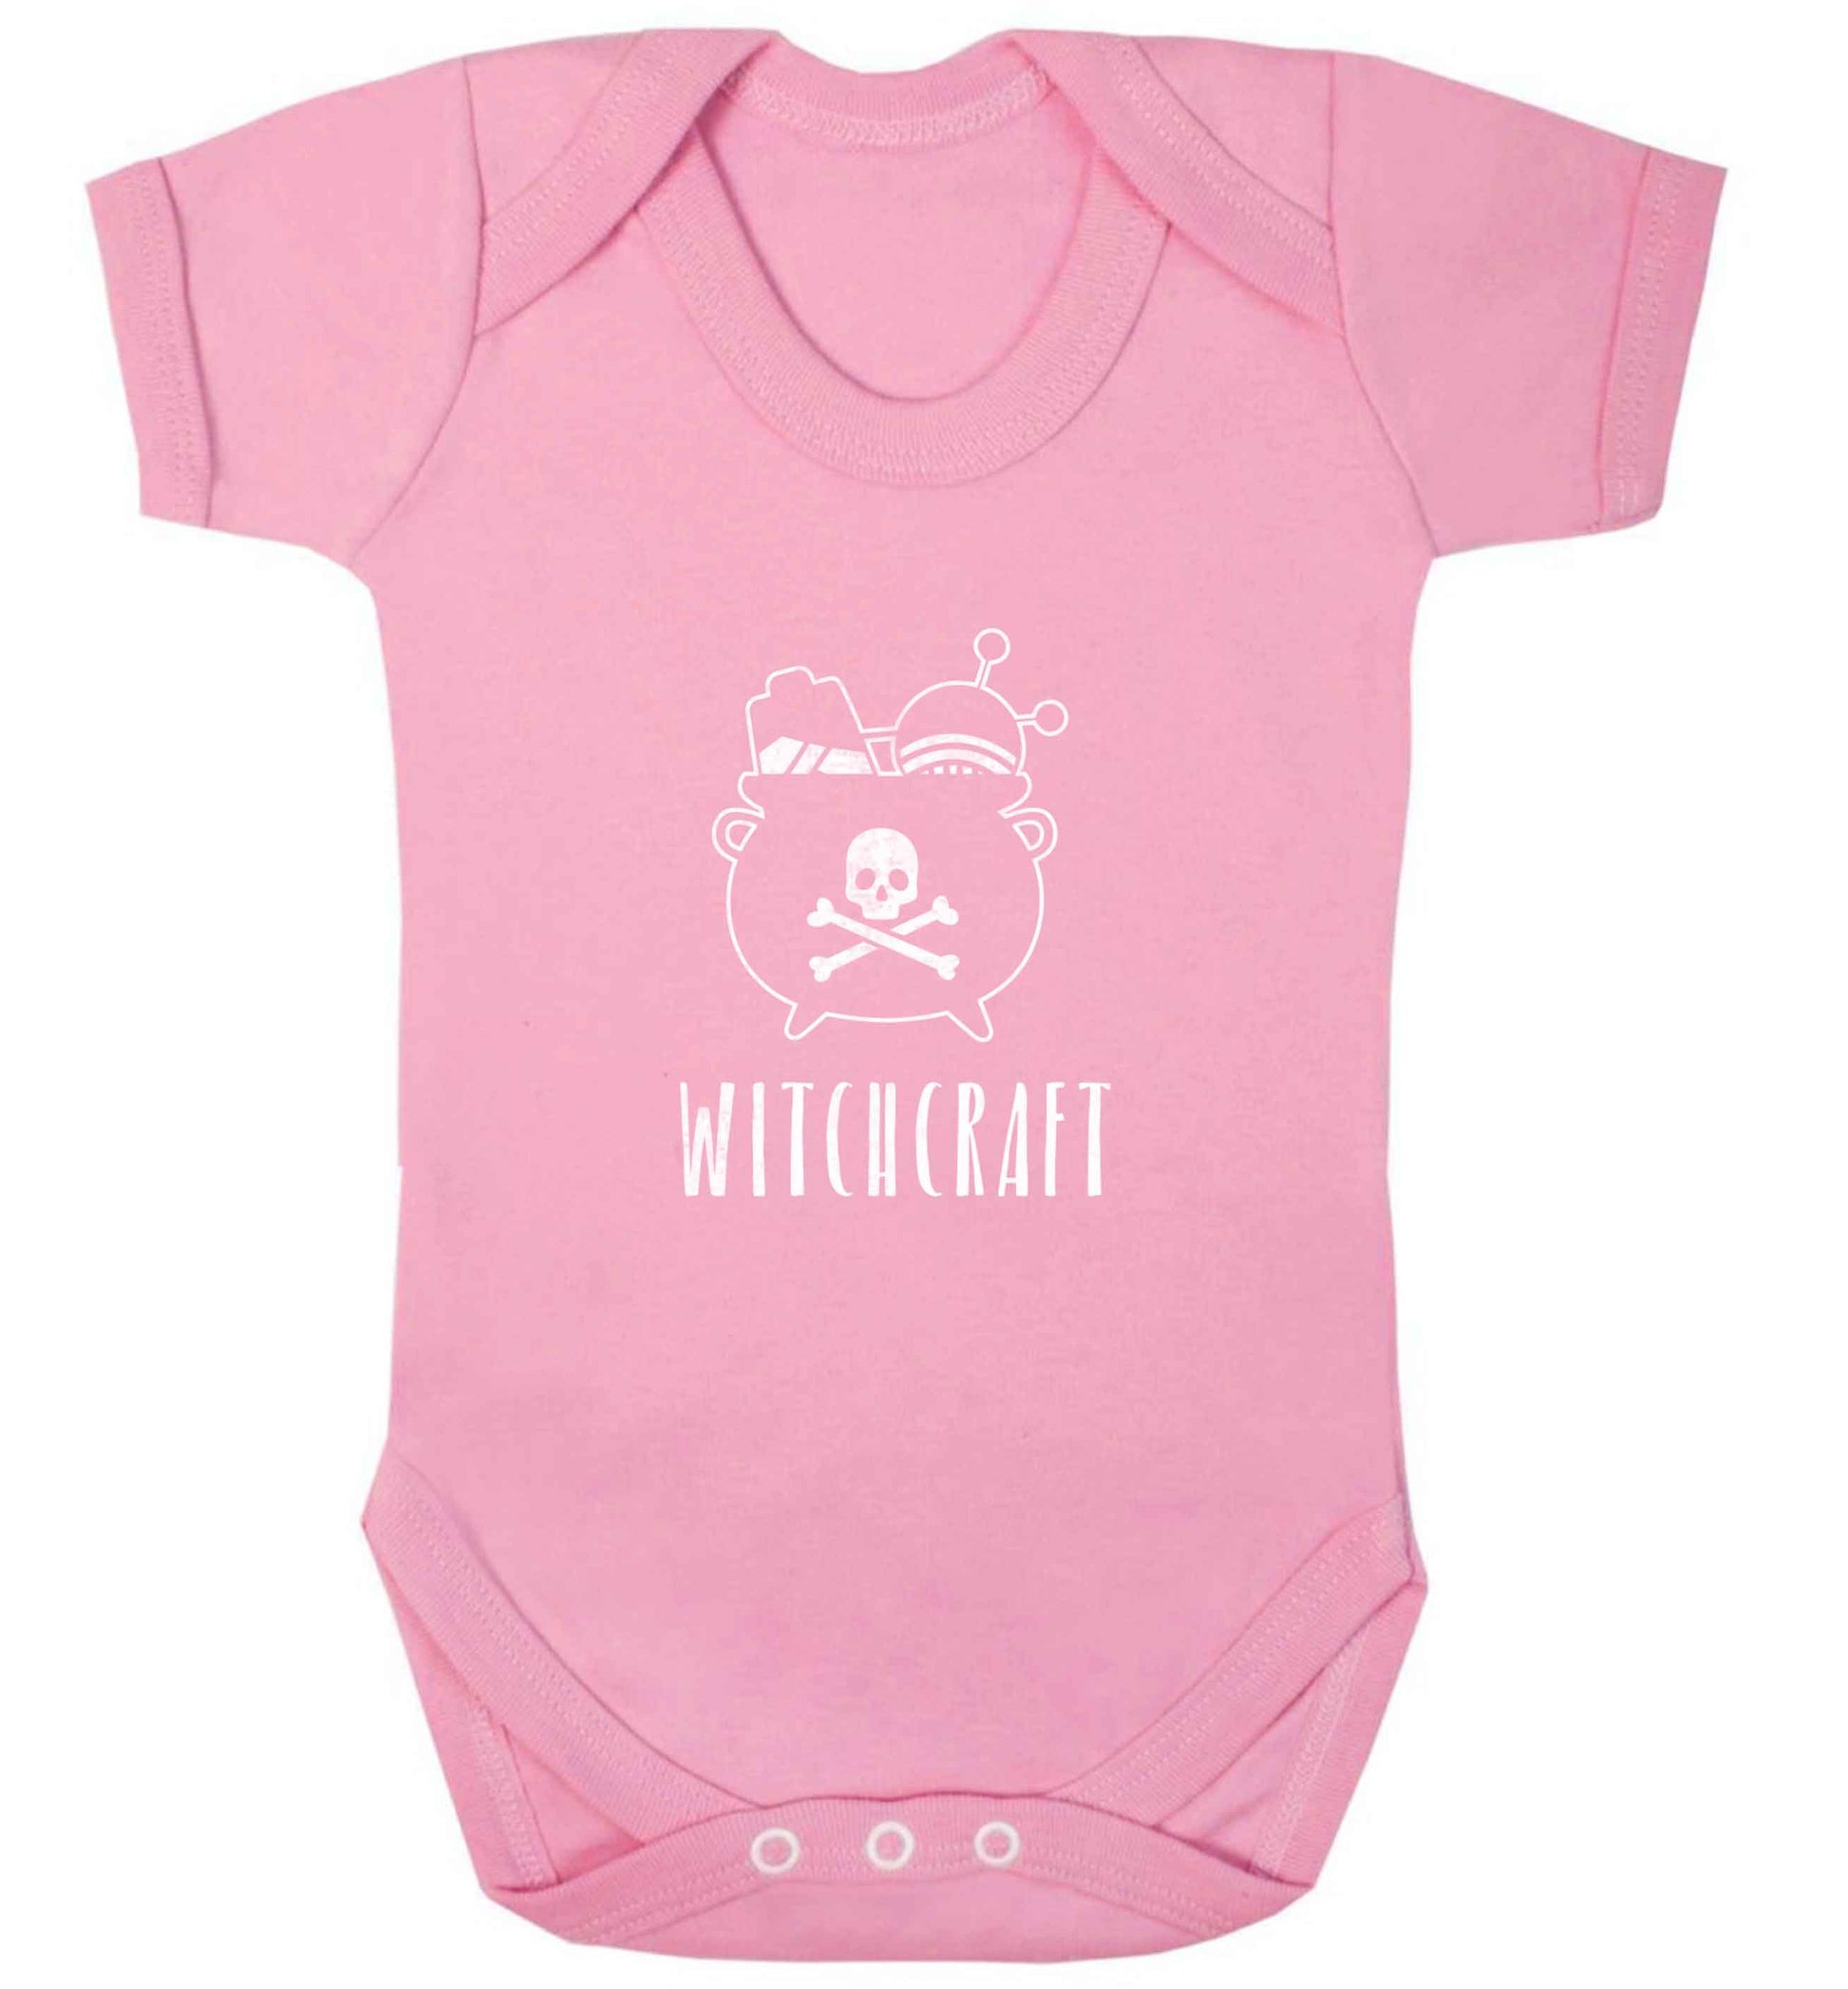 Witchcraft baby vest pale pink 18-24 months